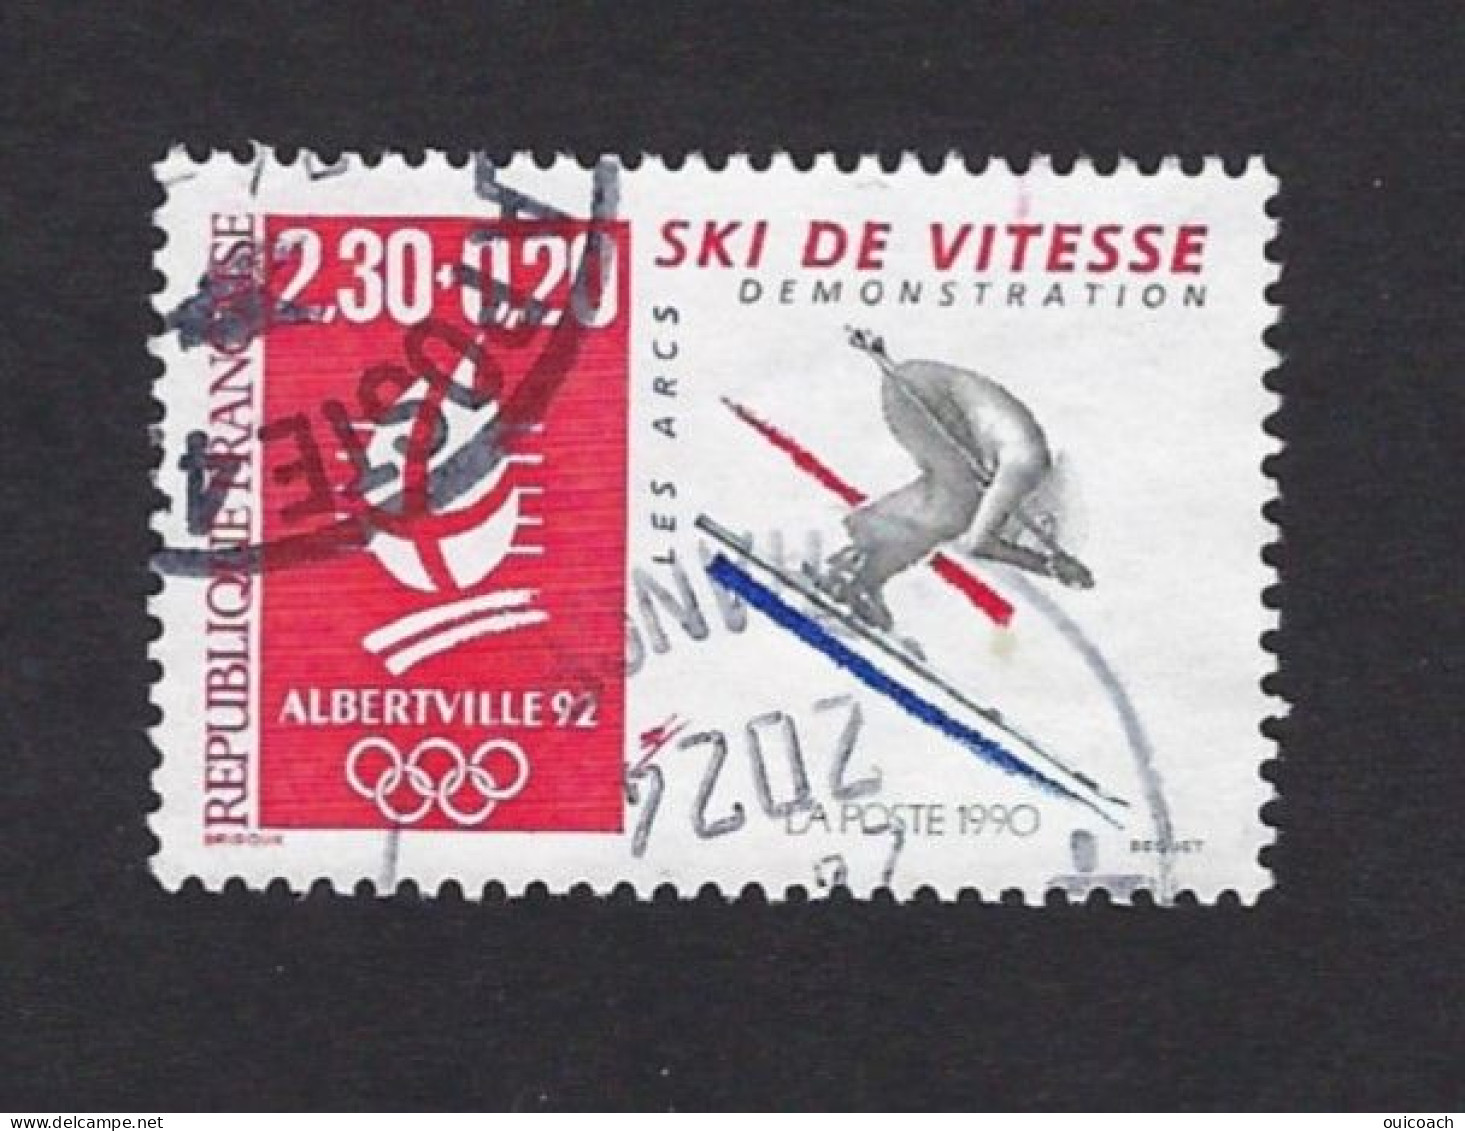 Ski Vitesse, Descente, 2675 - Inverno1992: Albertville